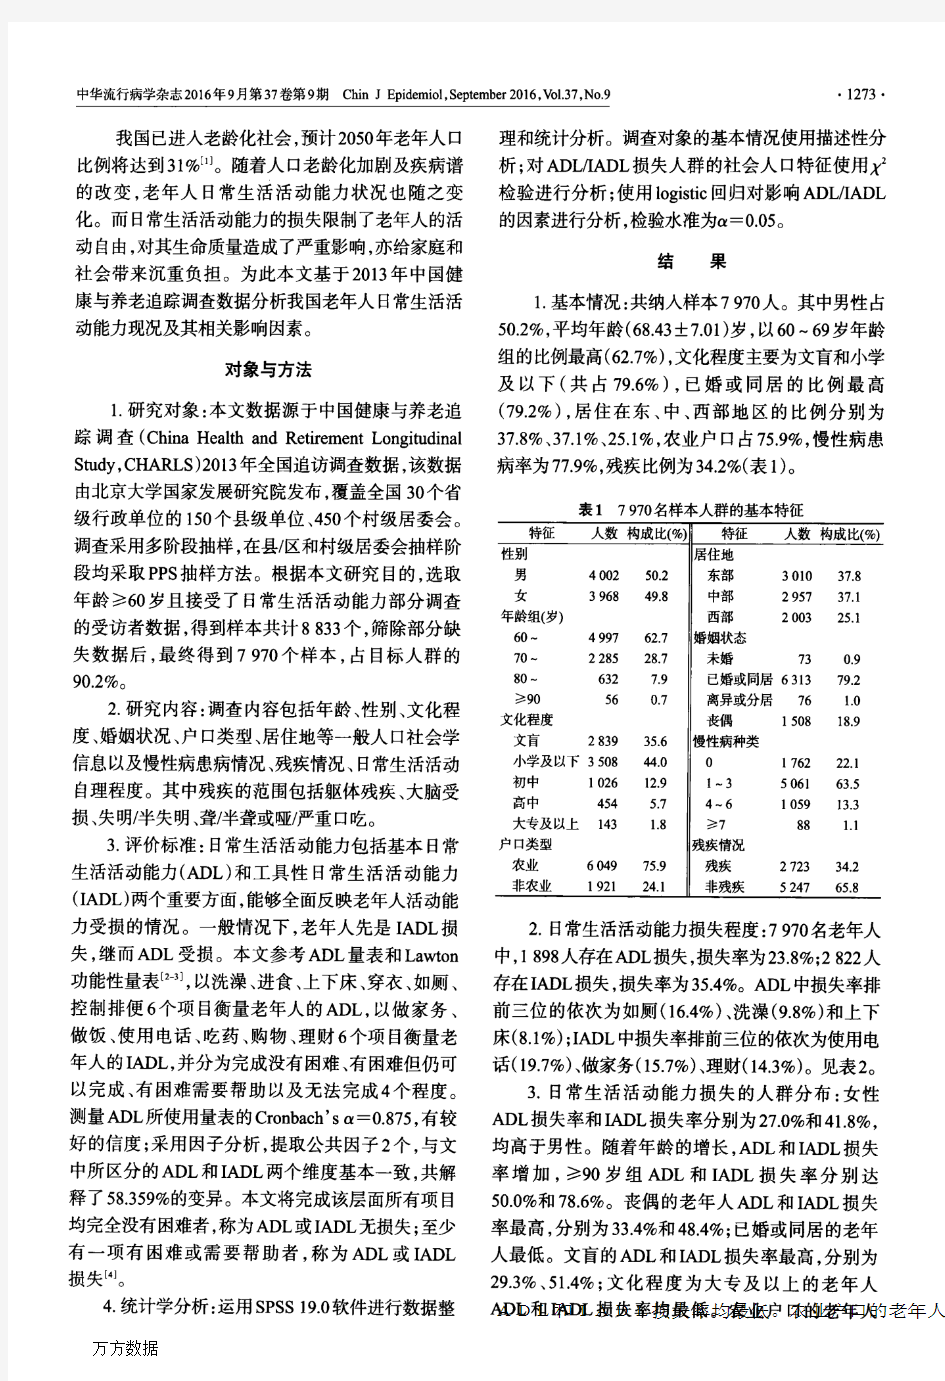 中国老年人日常生活活动能力损失现况及影响因素分析论文